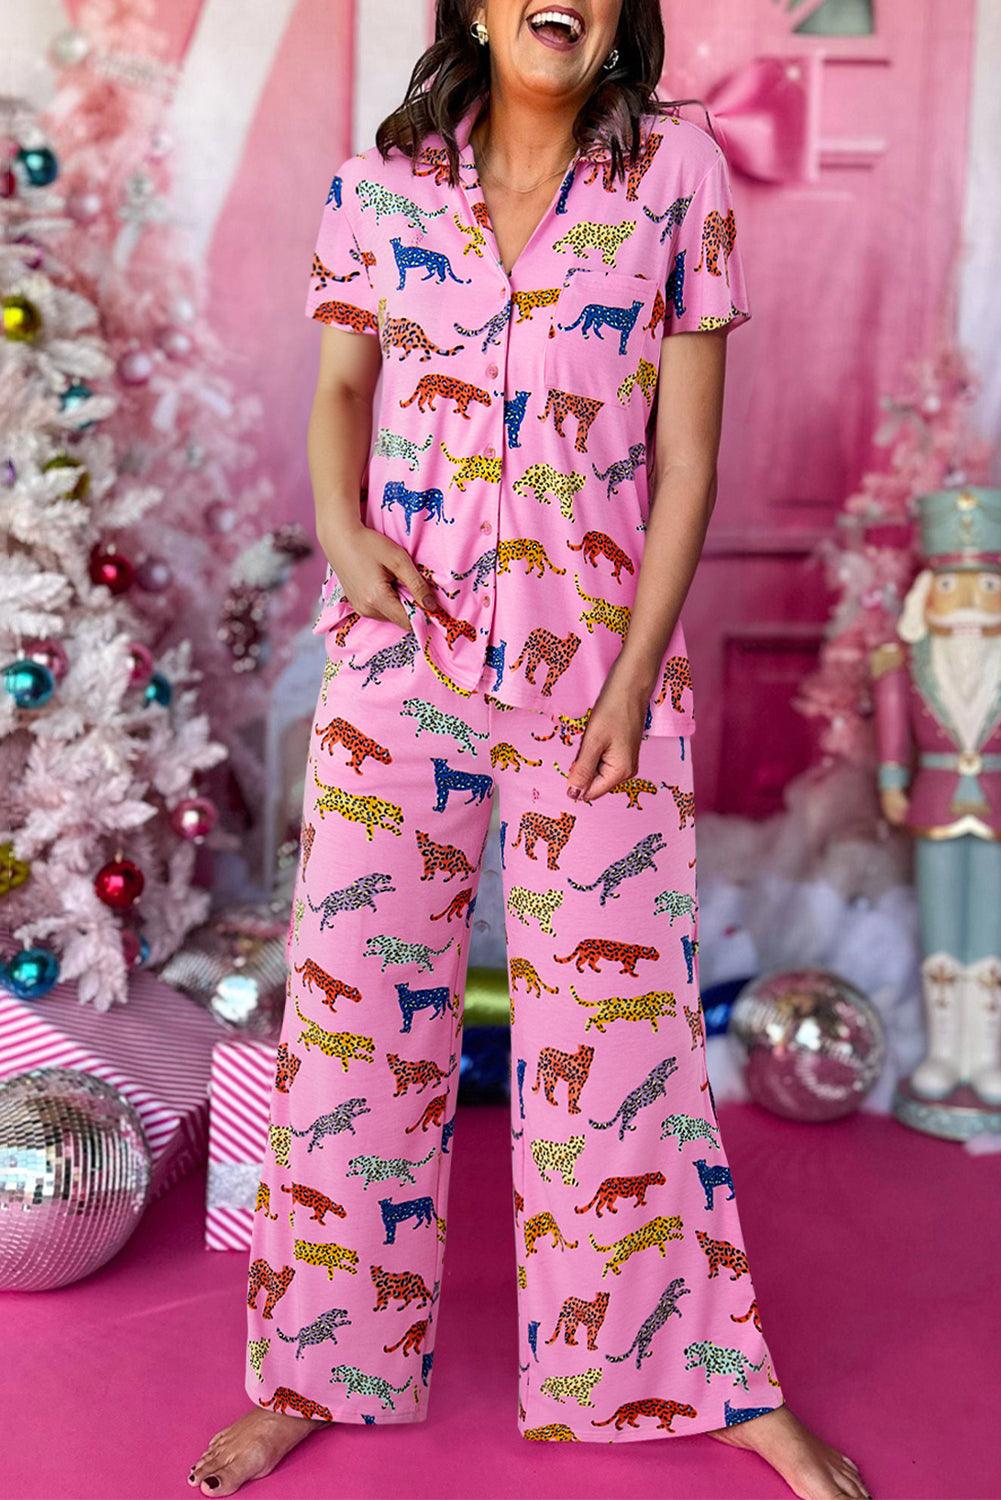 Pink Cheetah Print Short Sleeve Shirt and Wide Leg Pants Pajama Set